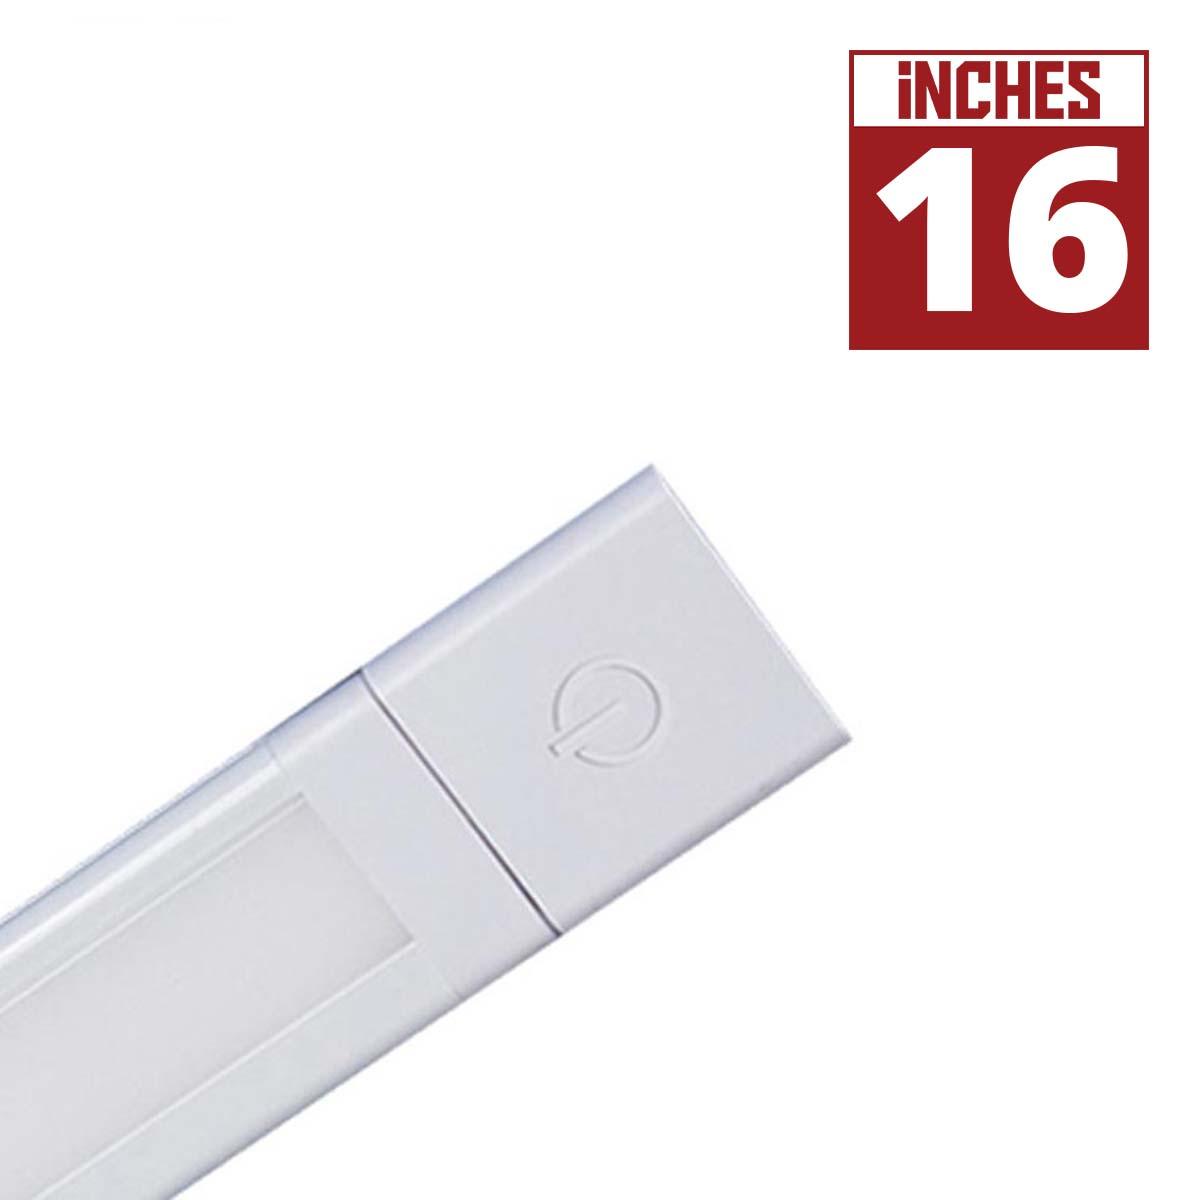 SlimEdge 16 Inch Modular Architectural Lightbar, 325 Lumens, Linkable, 24V